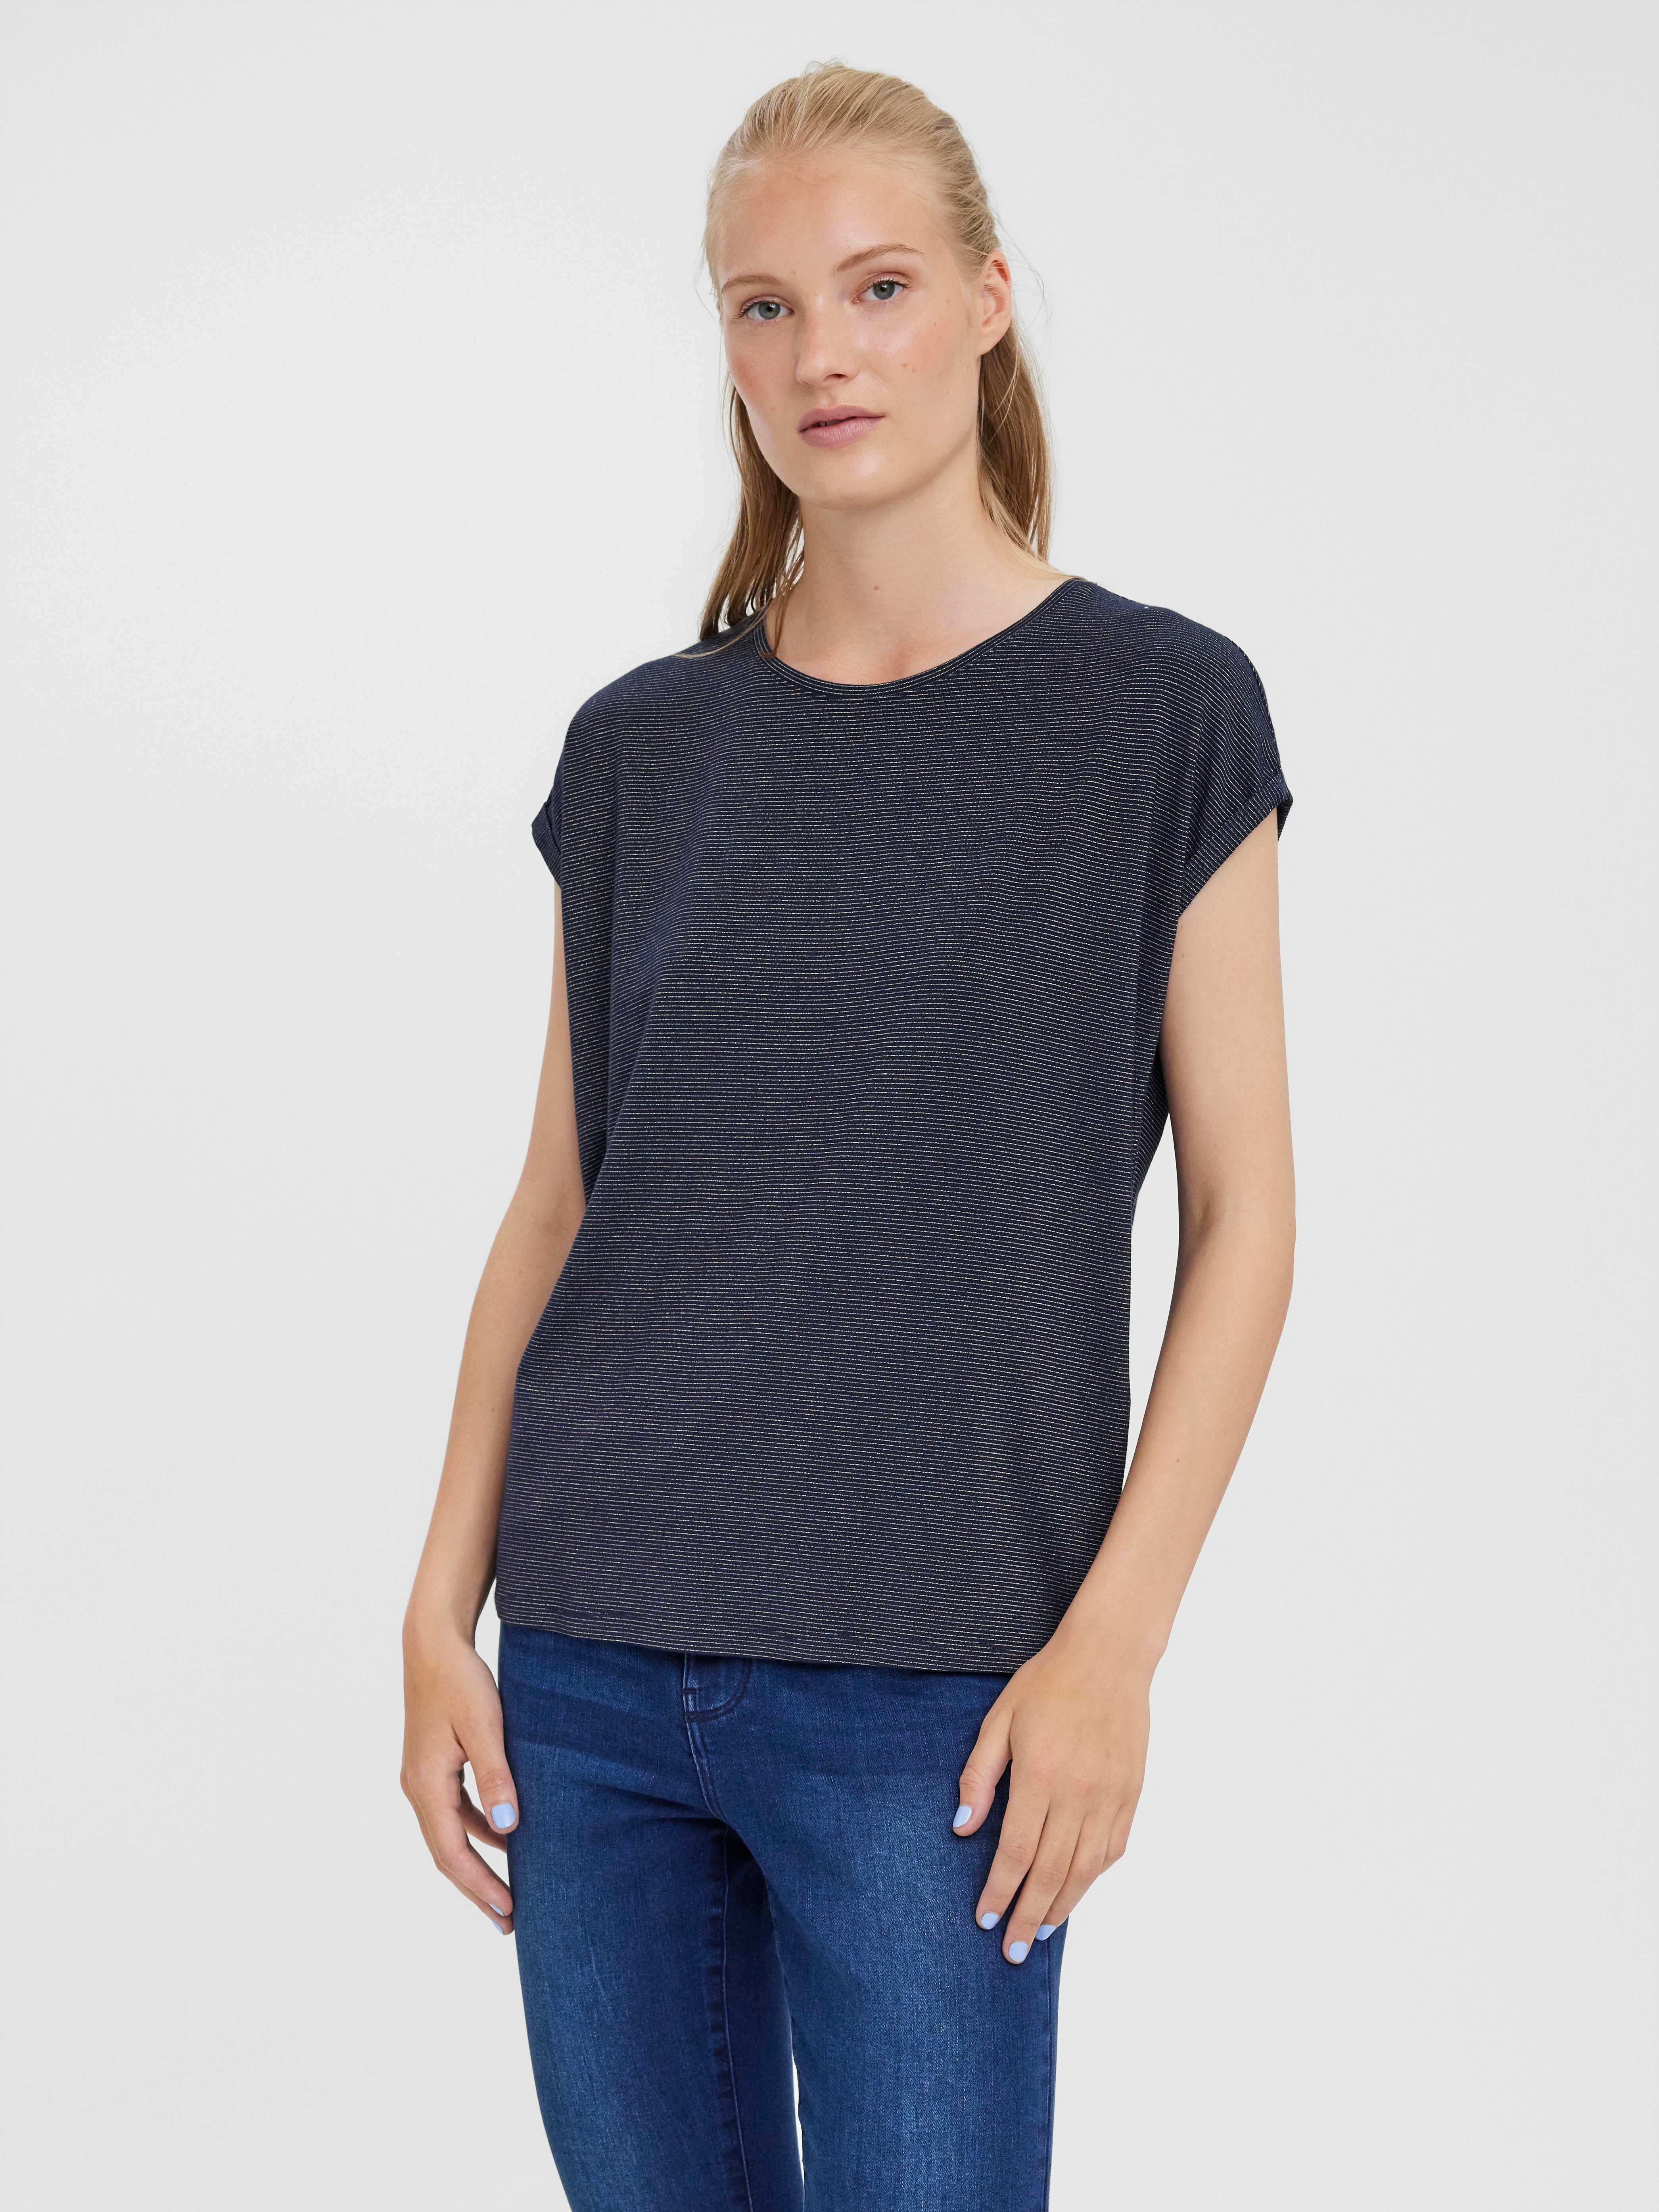 Rabatt 56 % DAMEN Hemden & T-Shirts T-Shirt Lingerie Braun M Vero Moda T-Shirt 